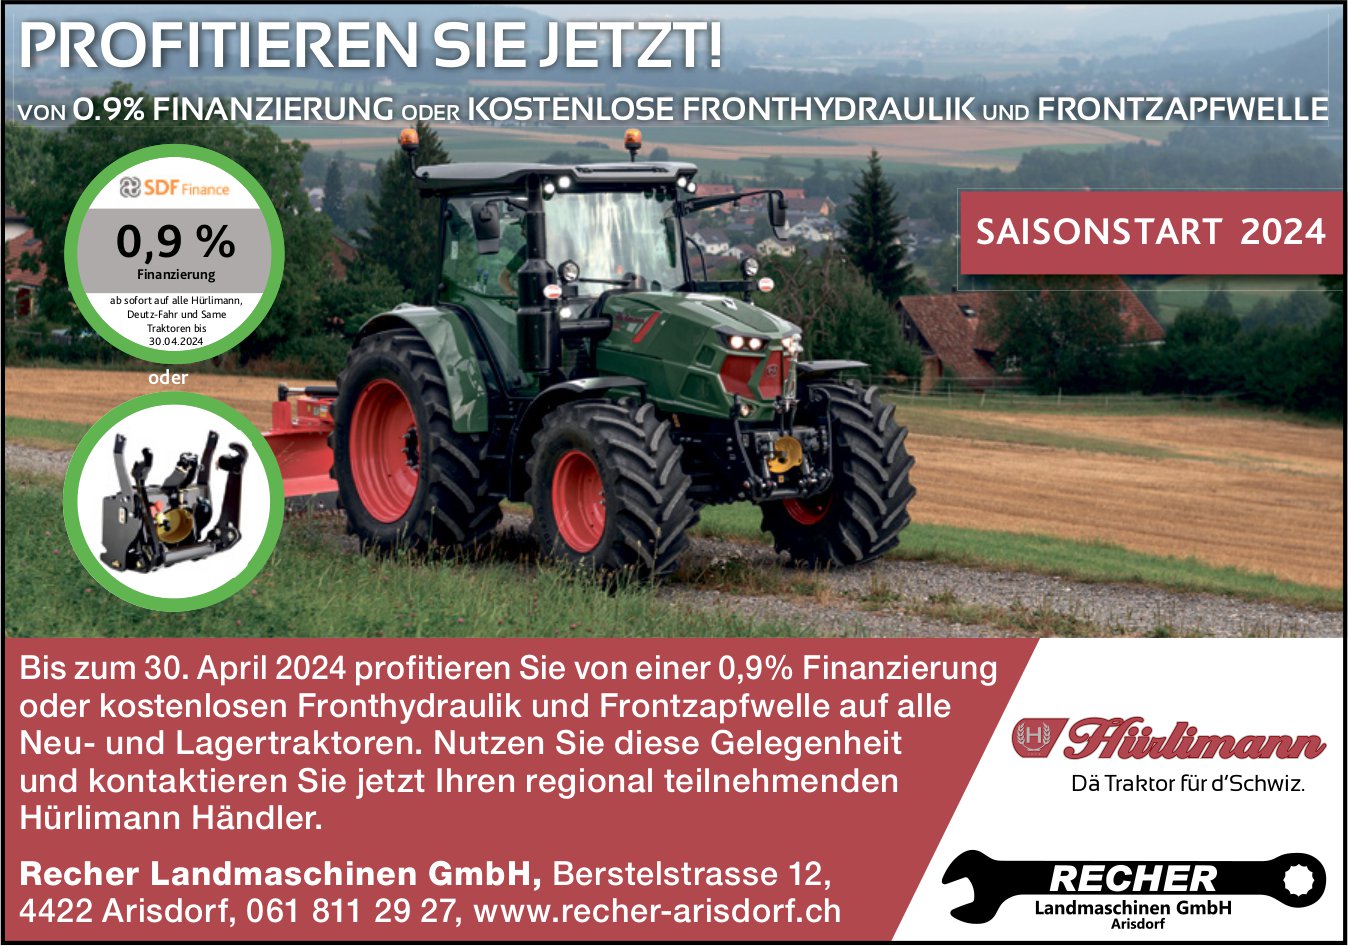 Recher Landmaschinen GmbH, Arisdorf - Profitieren Sie jetzt!